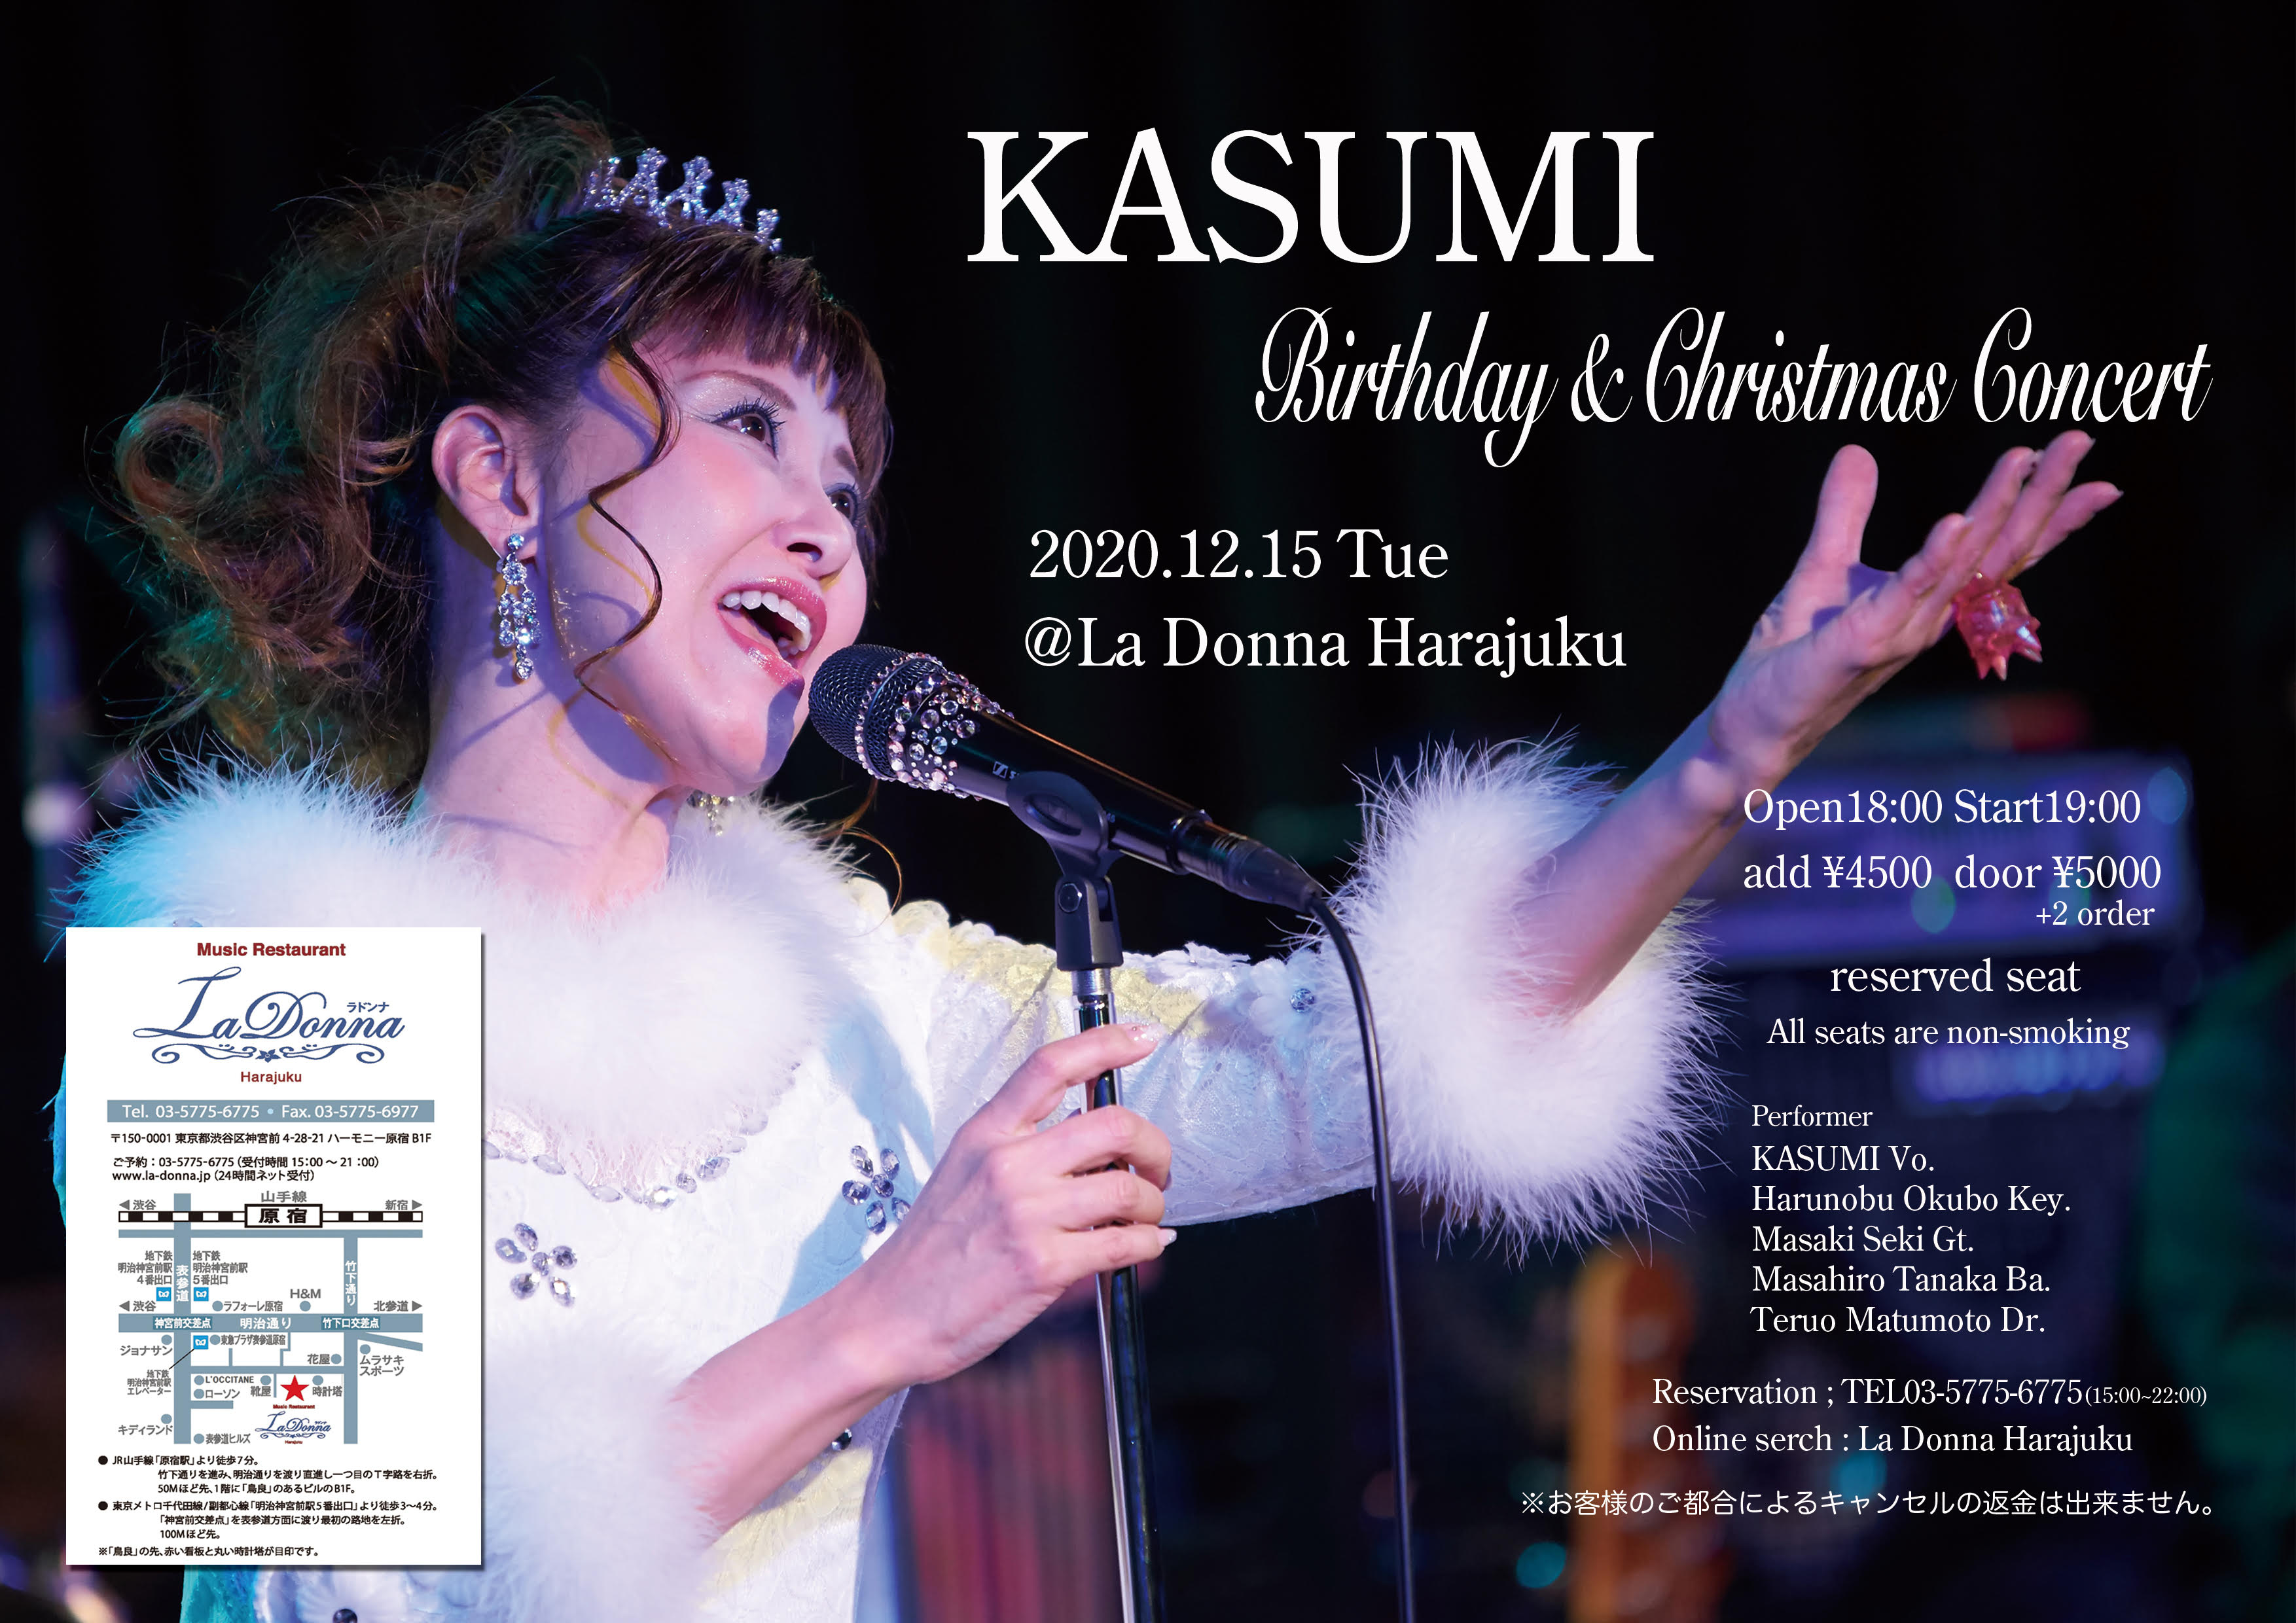 KASUMI Birthday & Christmas Concert